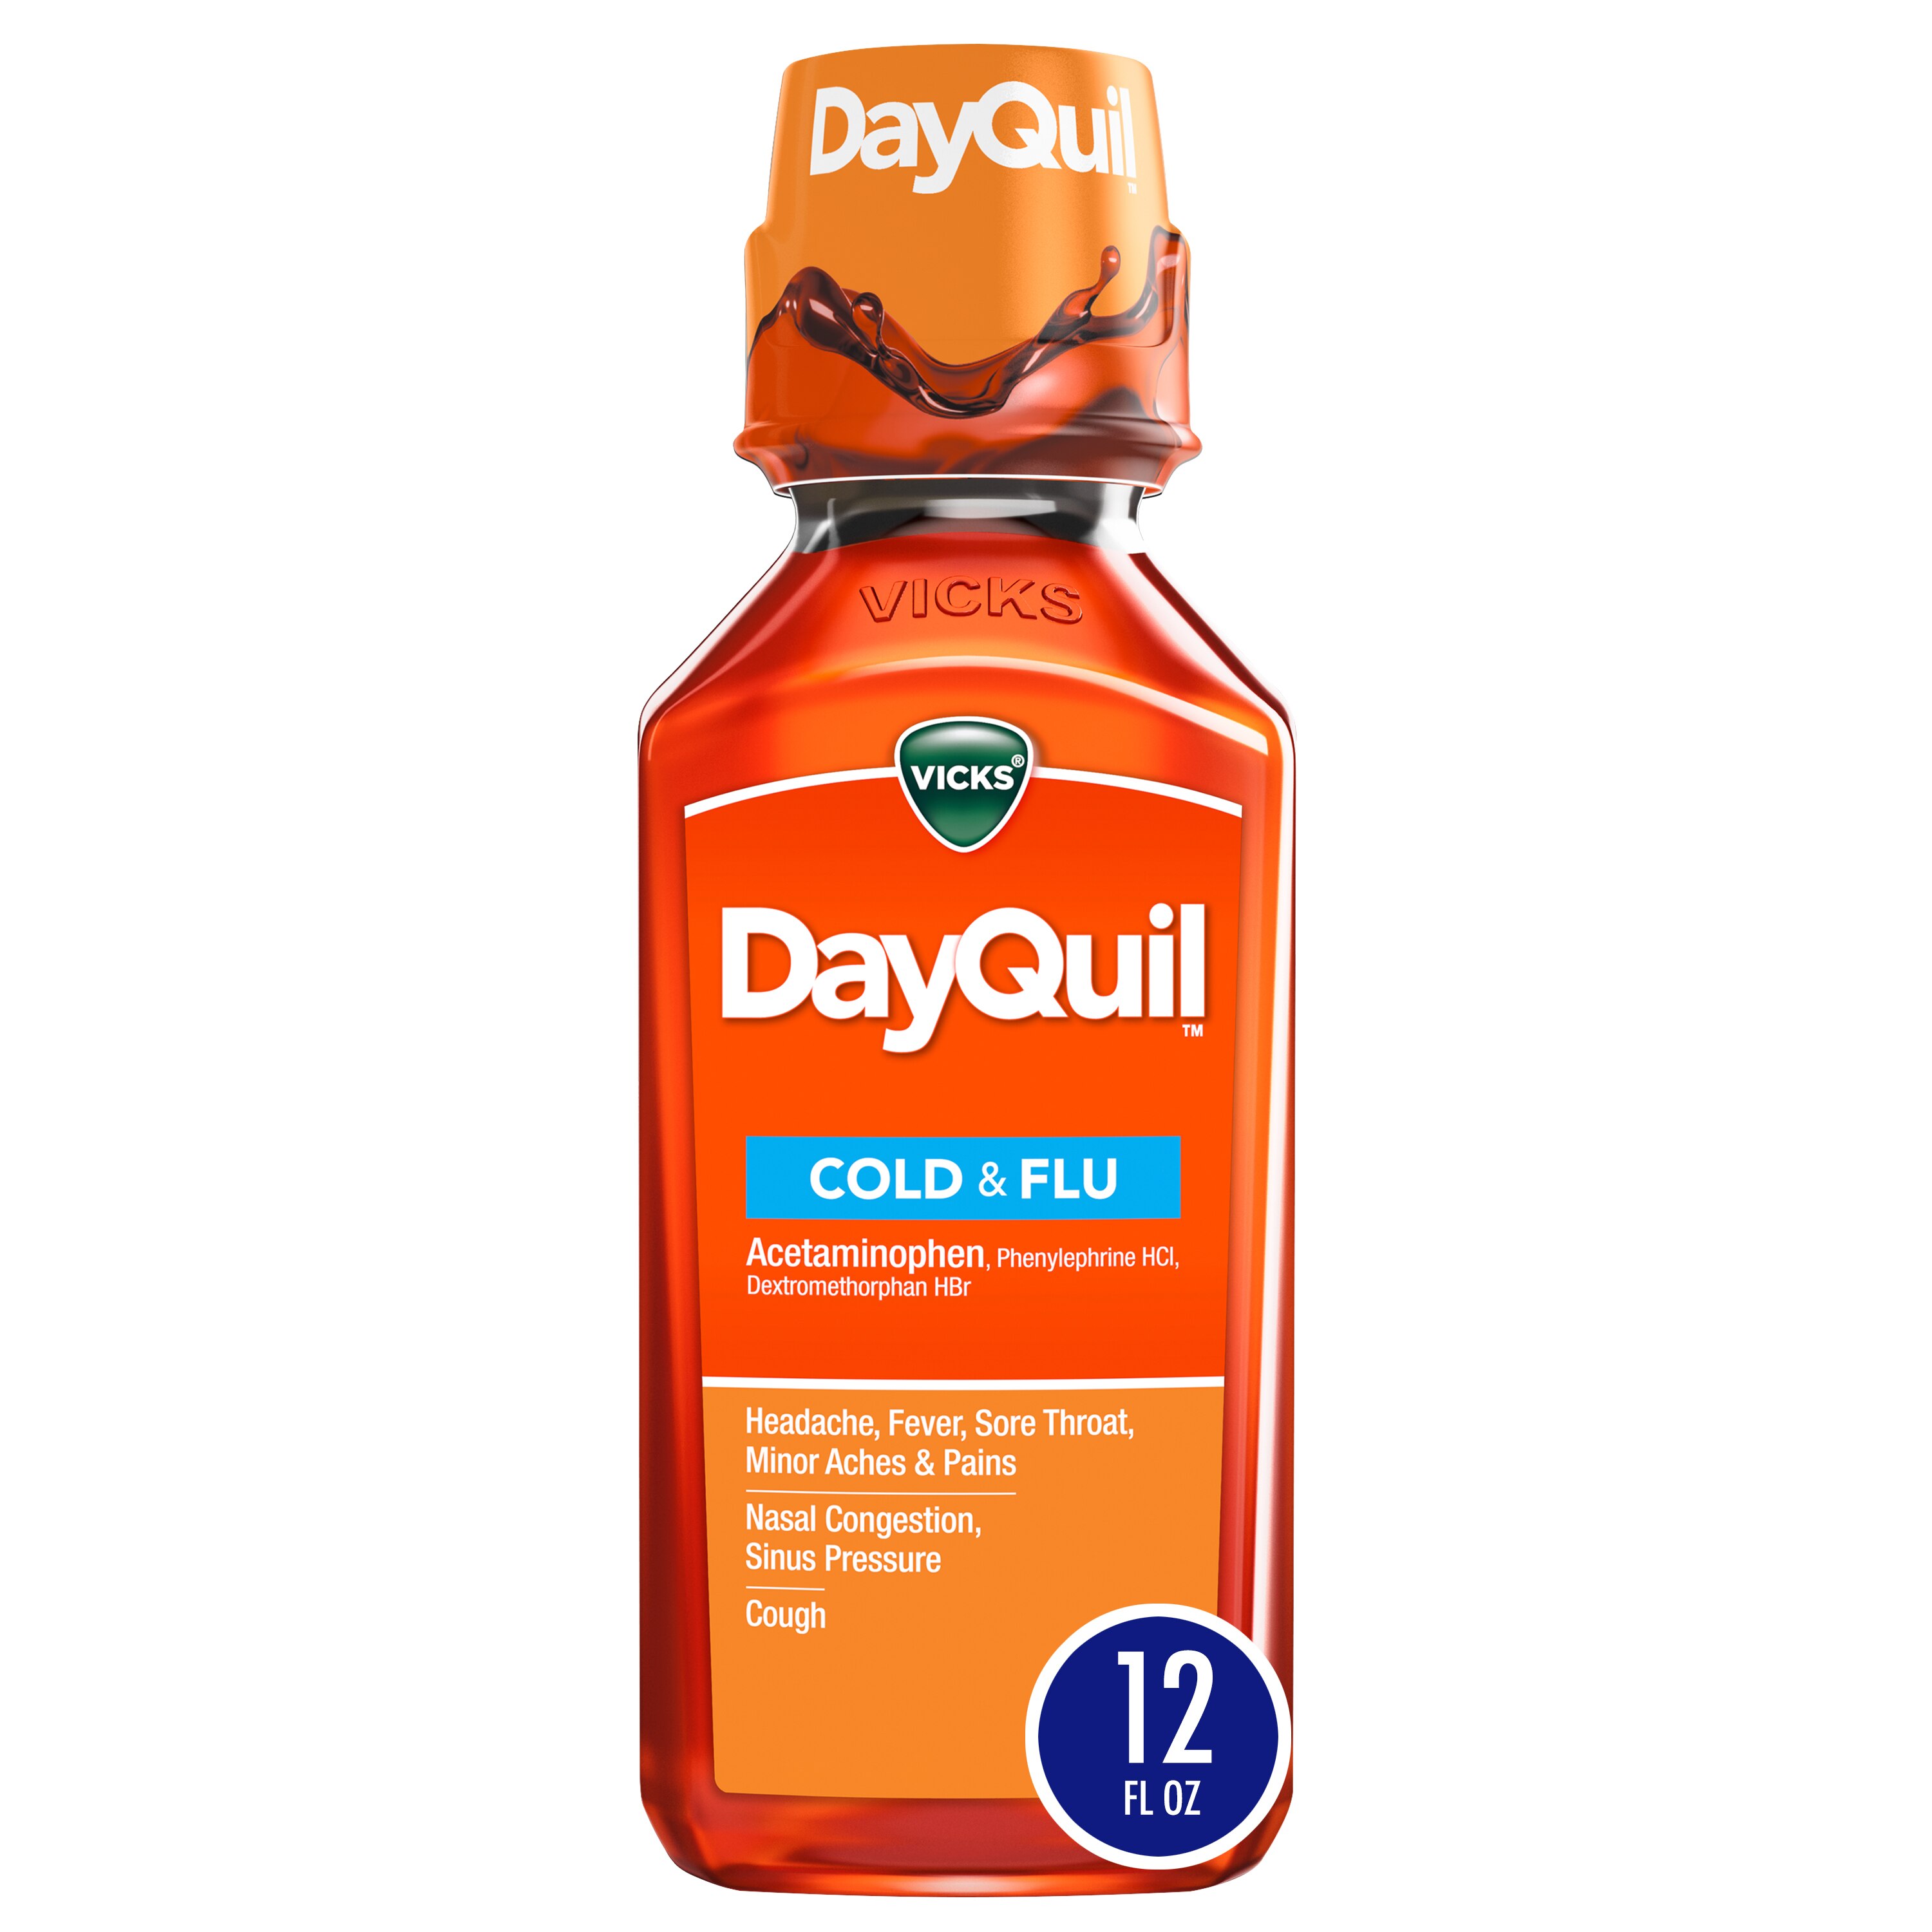 Vicks DayQuil - Medicamento para el resfriado y la gripe, para usar durante el día, no provoca somnolencia, alivia dolores, dolor de cabeza, fiebre, dolor de garganta, congestión, estornudos, goteo nasal, tos, 12 oz líq.